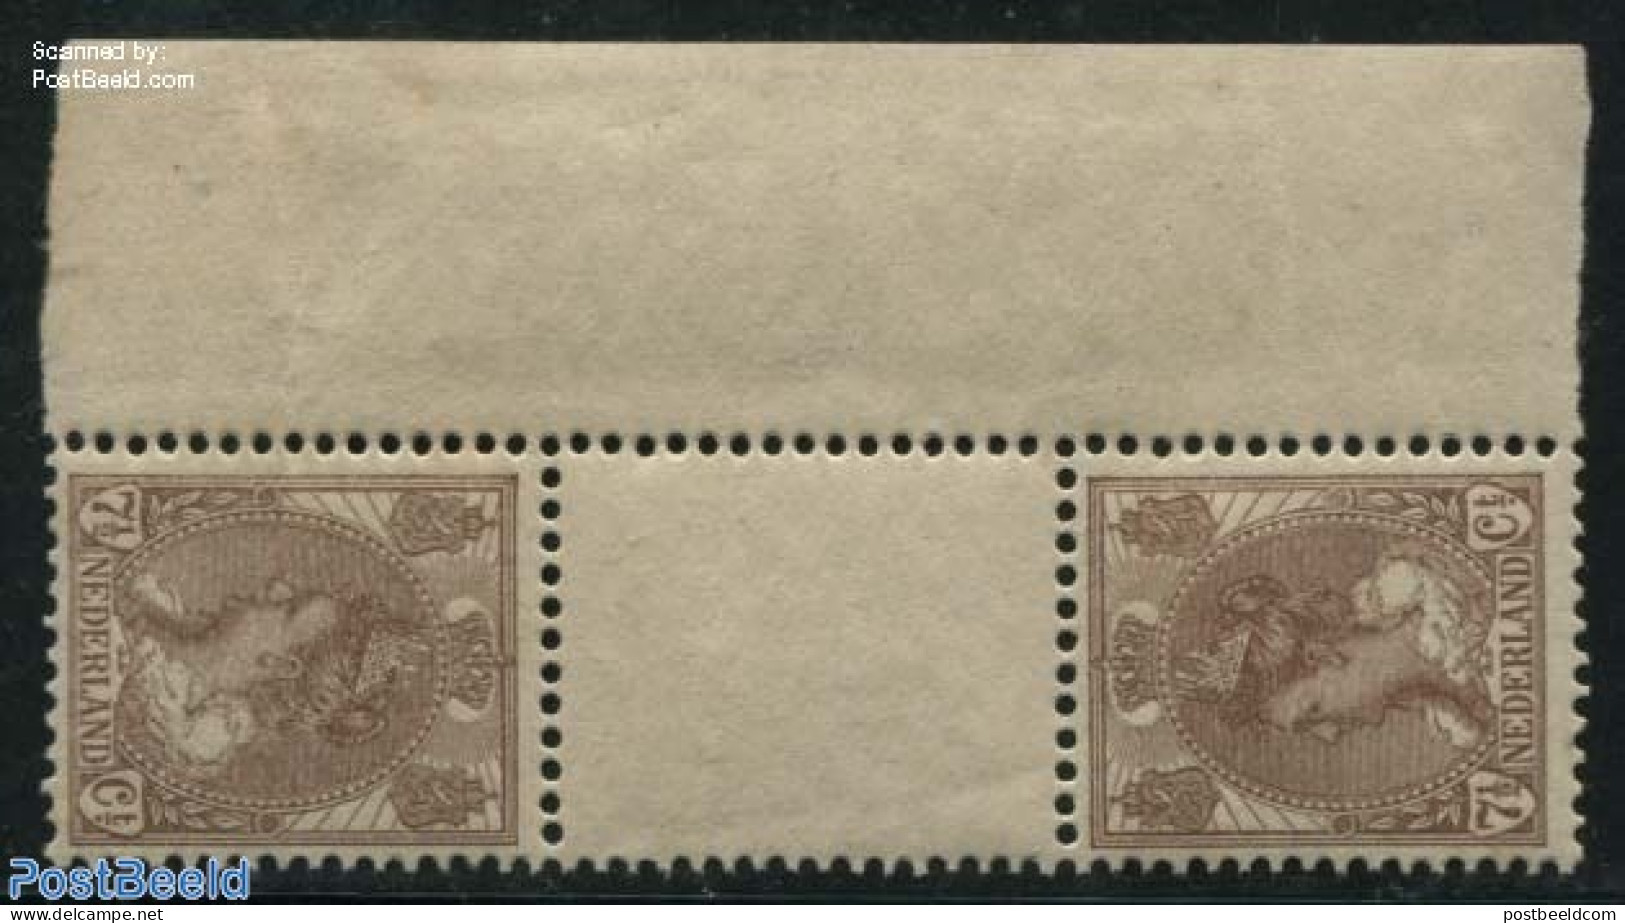 Netherlands 1924 7.5c Tete Beche Gutterpair (hinge On Right Sheet Margin), Mint NH - Neufs